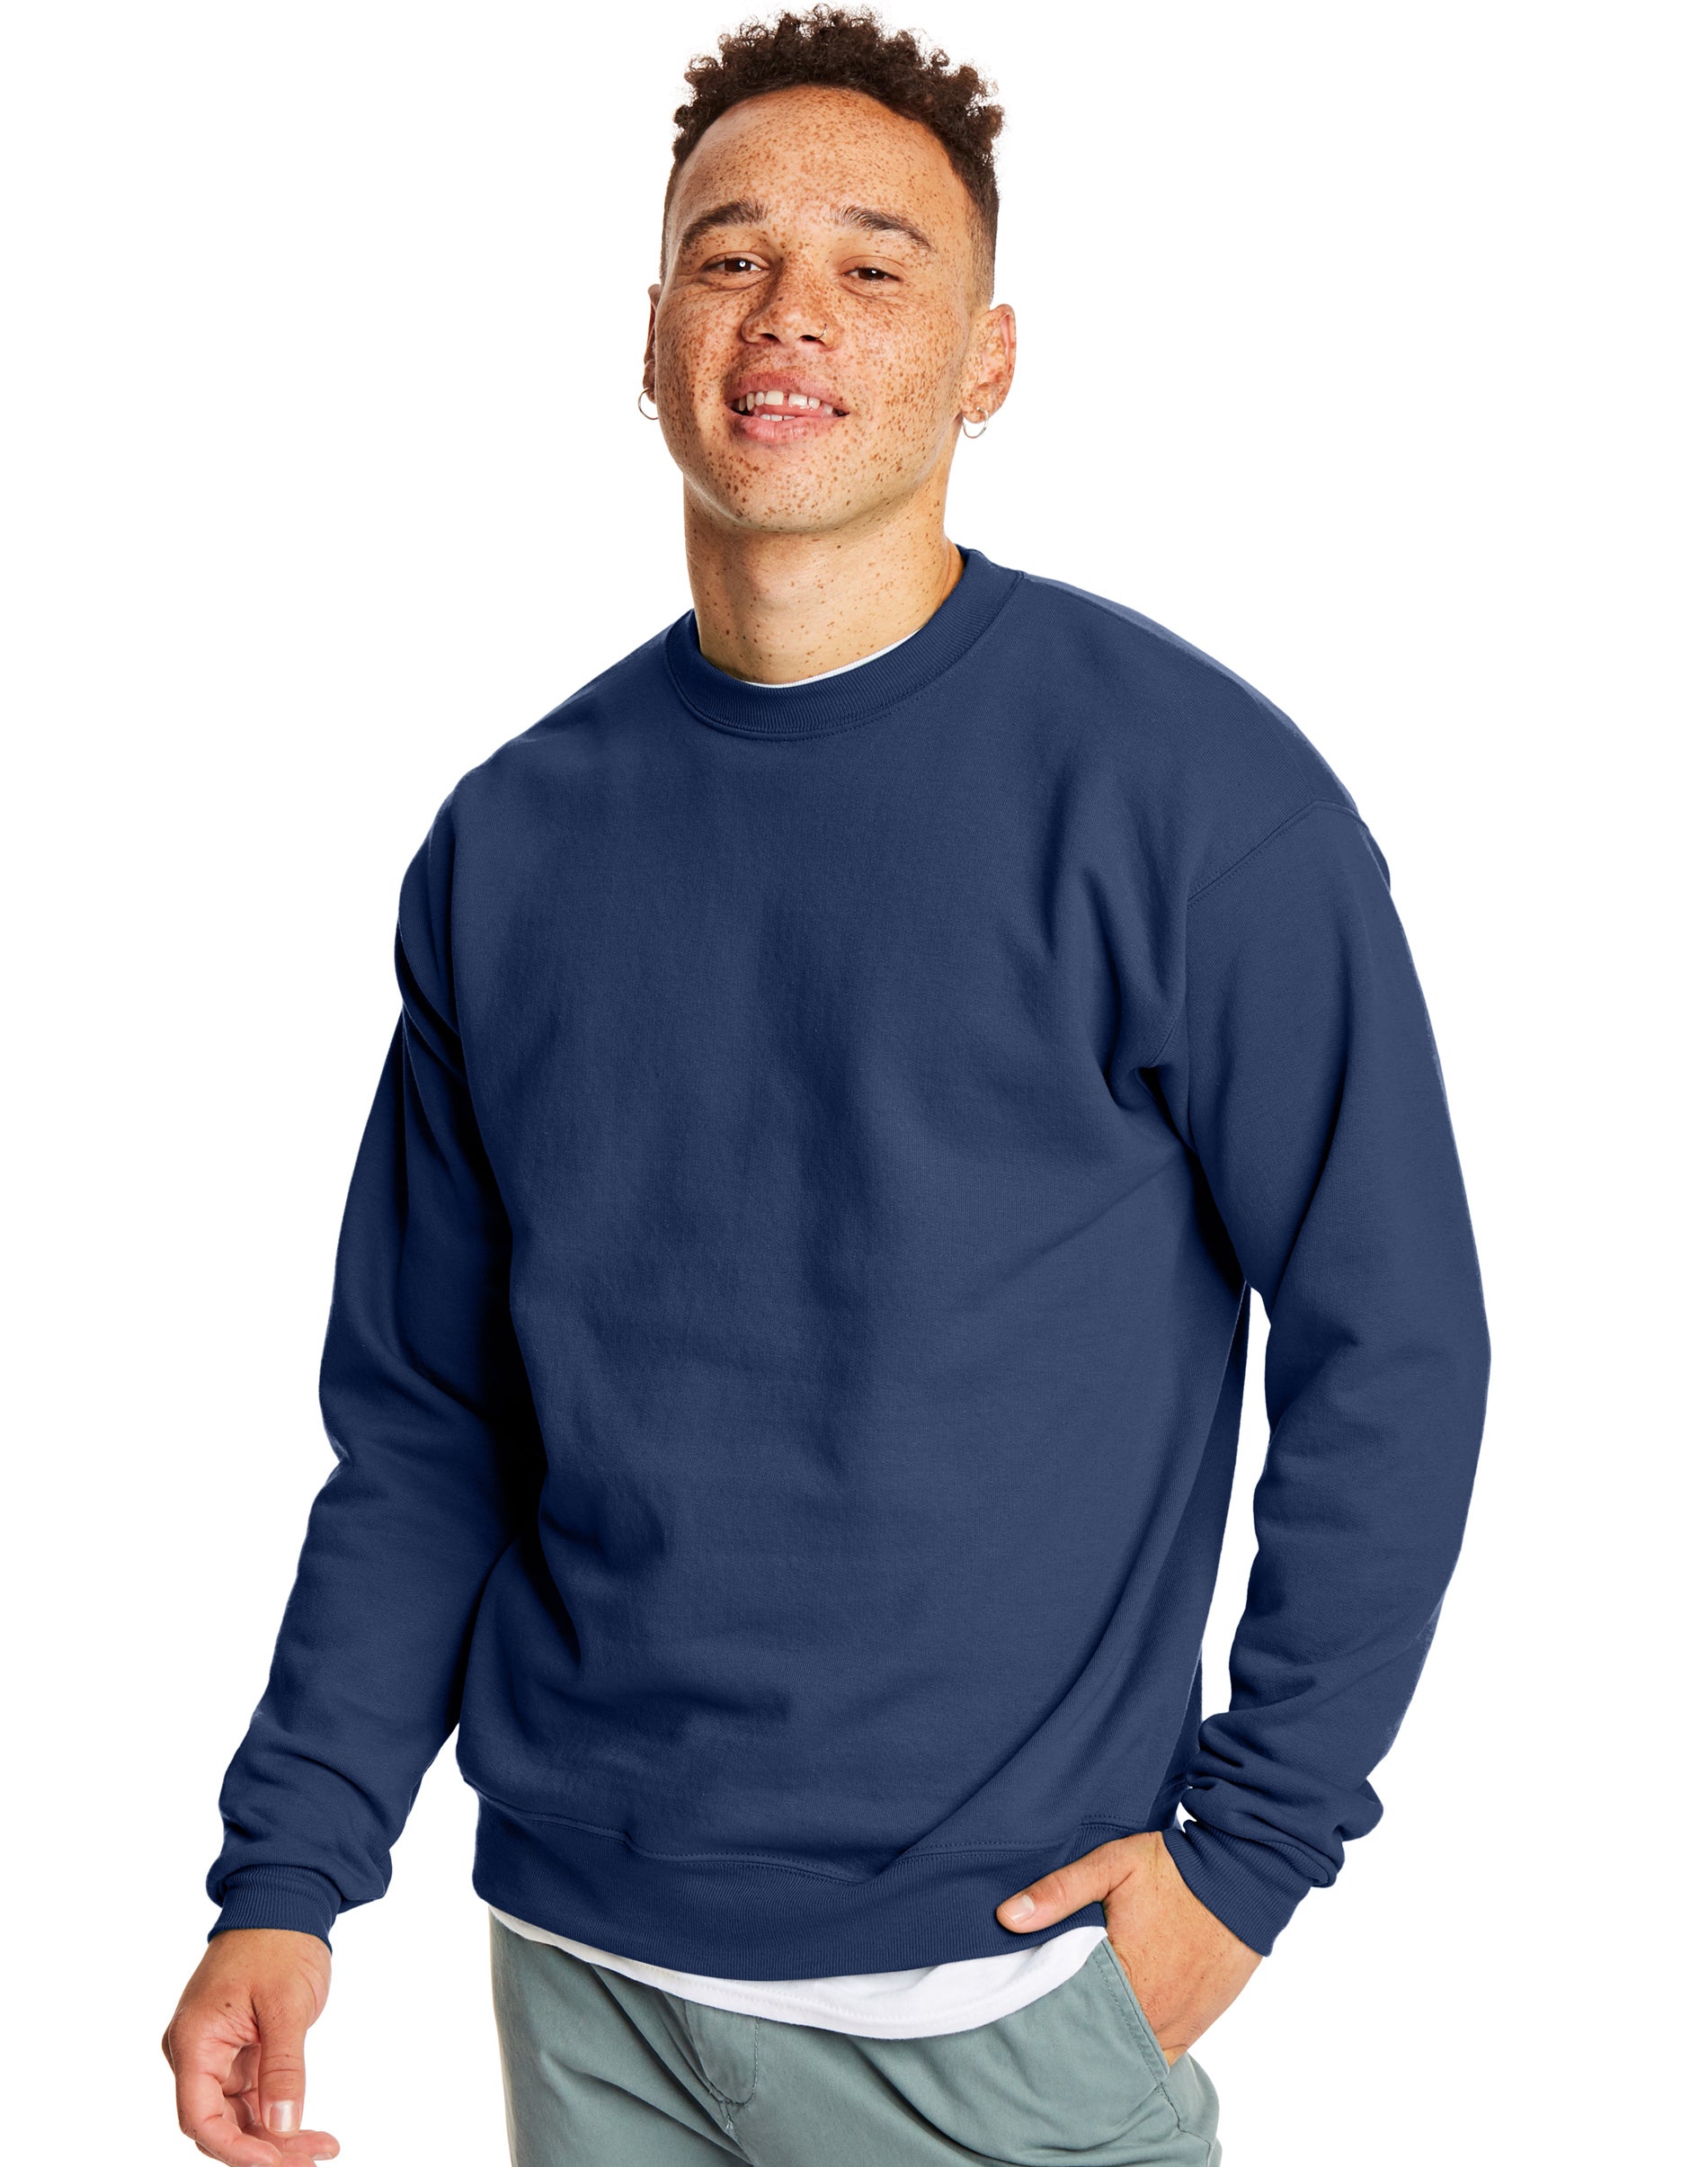 Hanes EcoSmart Crewneck Men's Sweatshirt Navy S - image 1 of 6